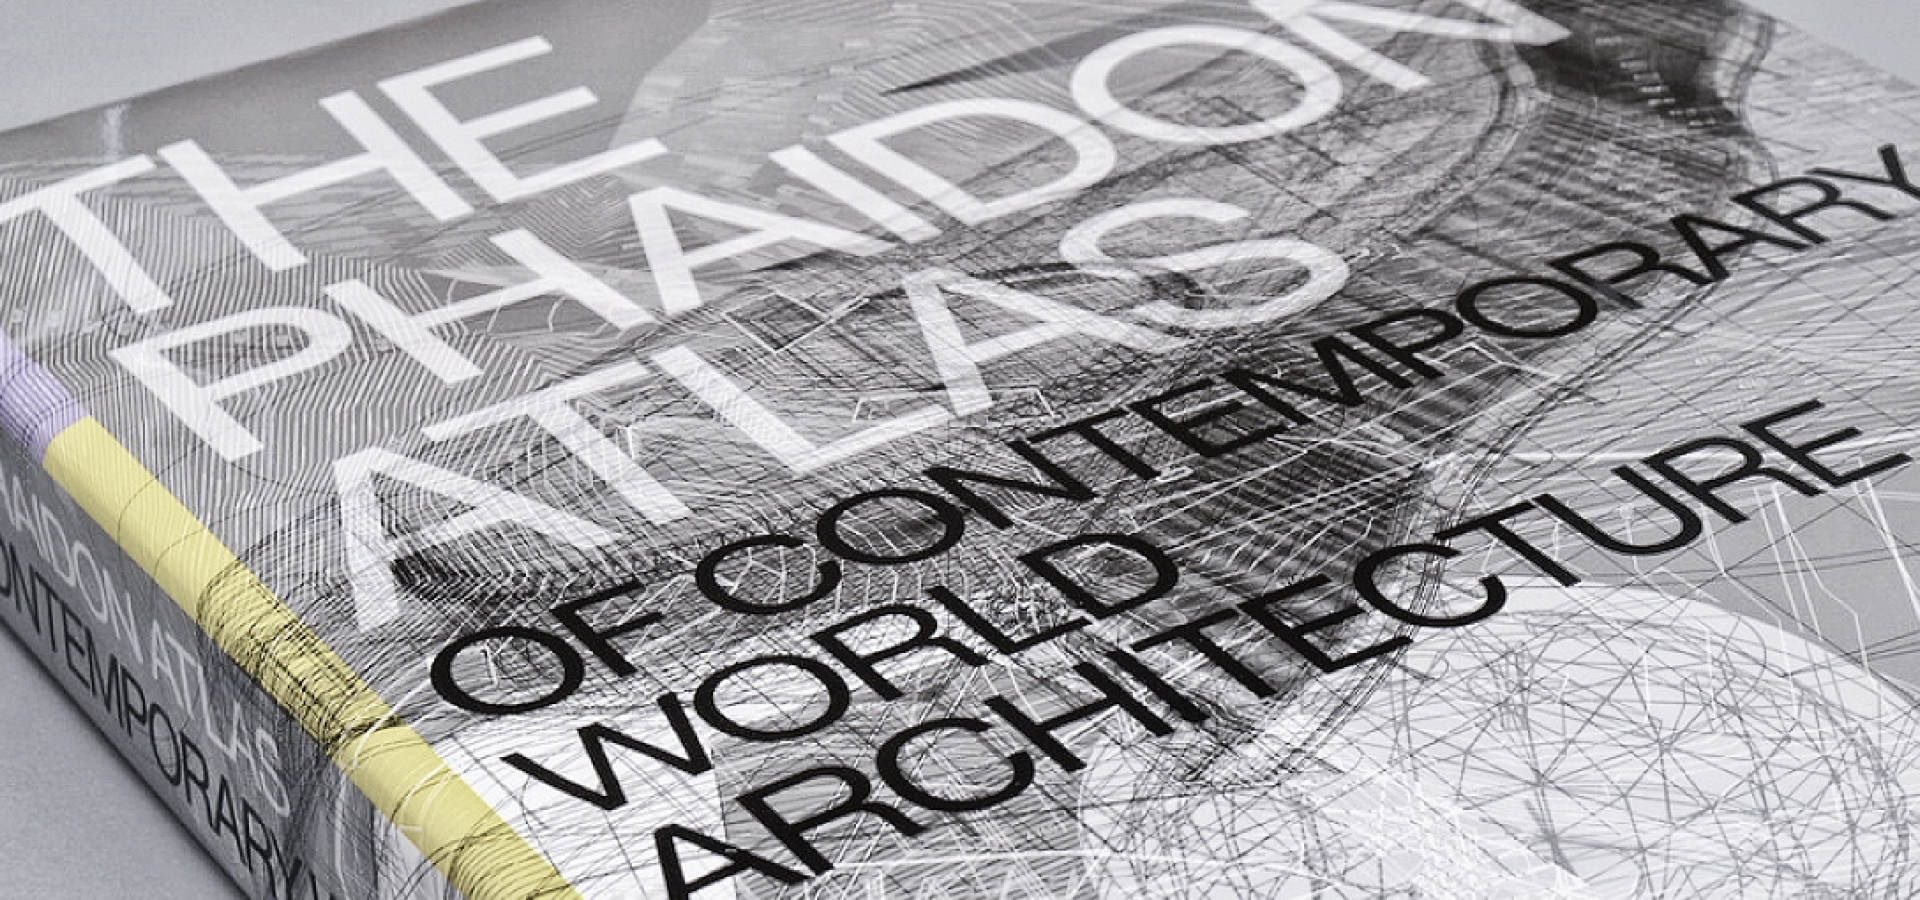 Publications | Atrium Architekti